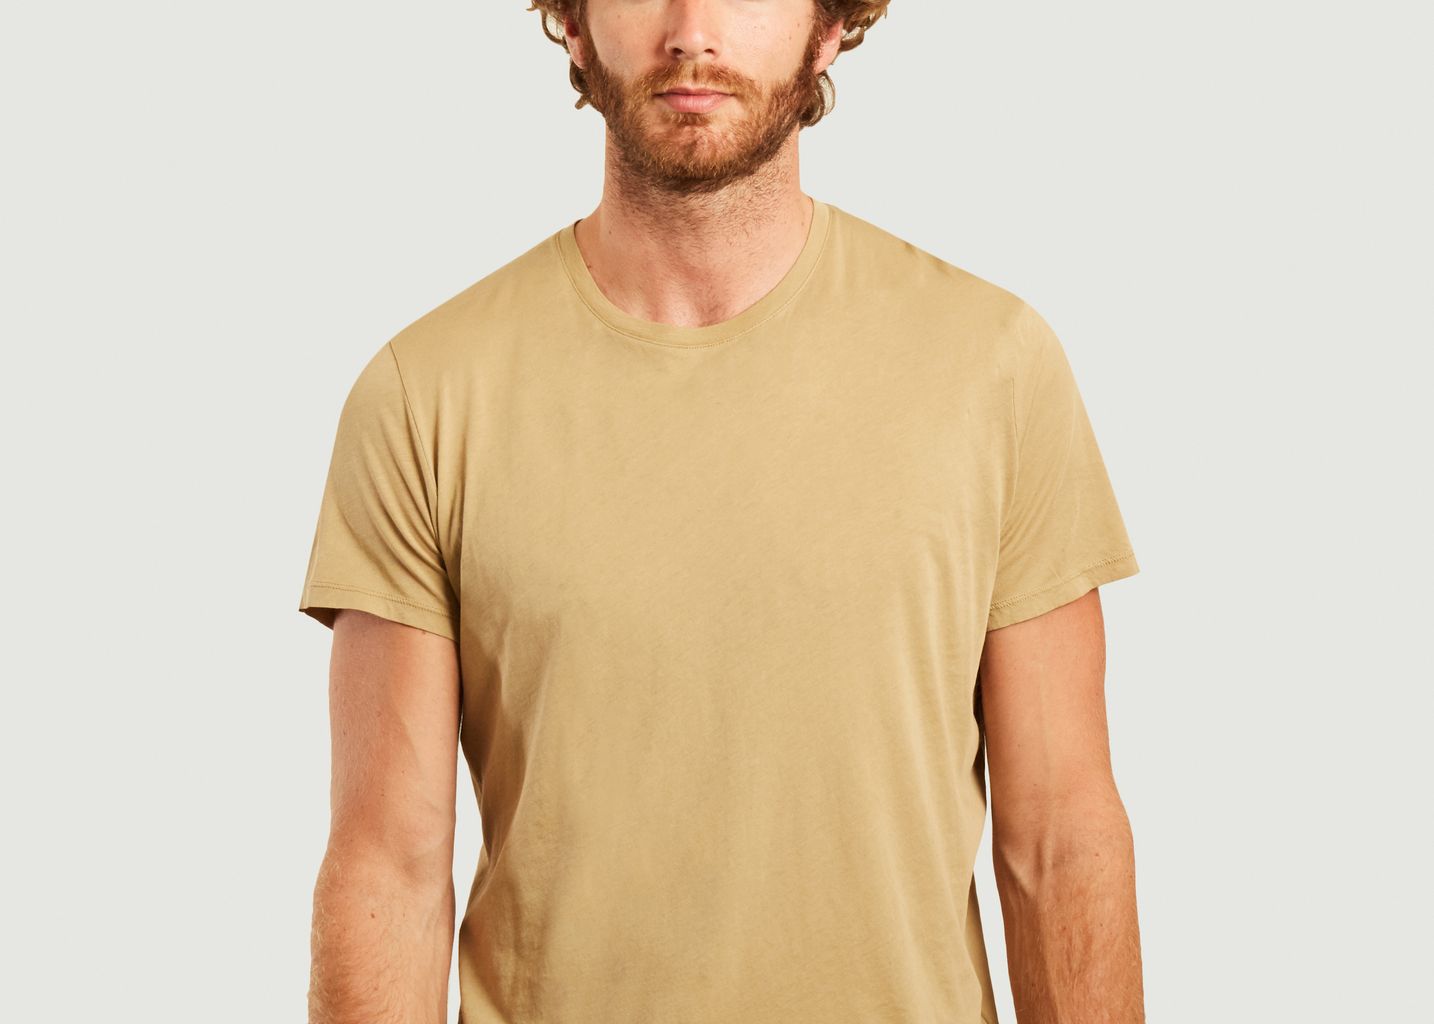 Decatur cotton t-shirt - American Vintage